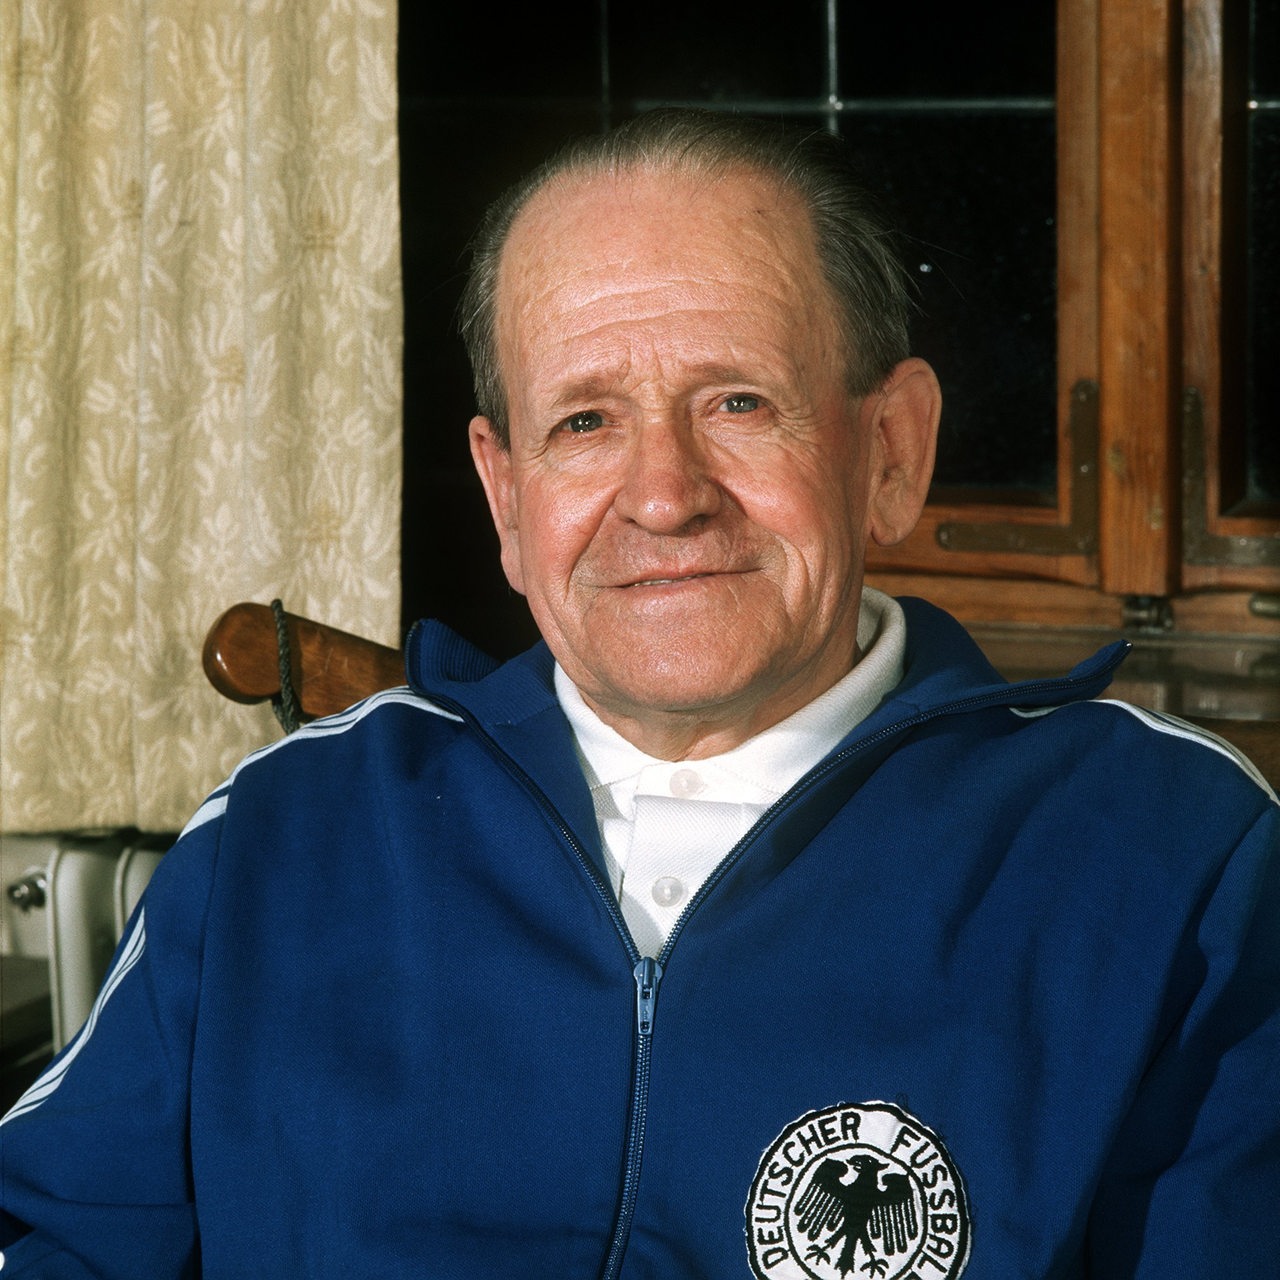 Sepp Herberger, Ehemaliger Bundestrainer der deutschen Fußball-Nationalmannschaft. Aufgenommen am 28. März 1972